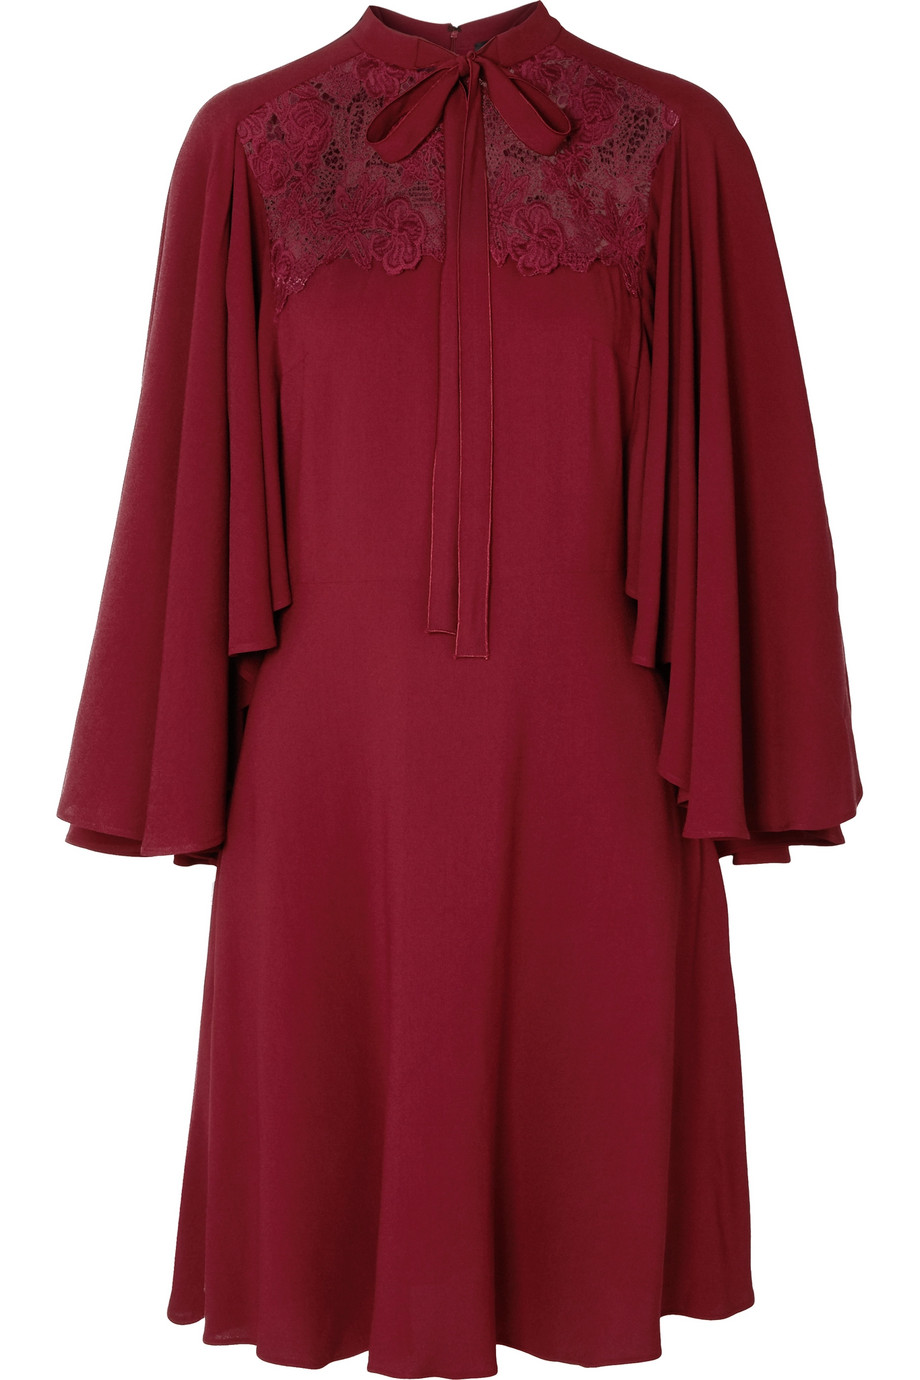 Φόρεμα με ενσωματωμένη κάπα και δαντέλα-Giambattista Valli